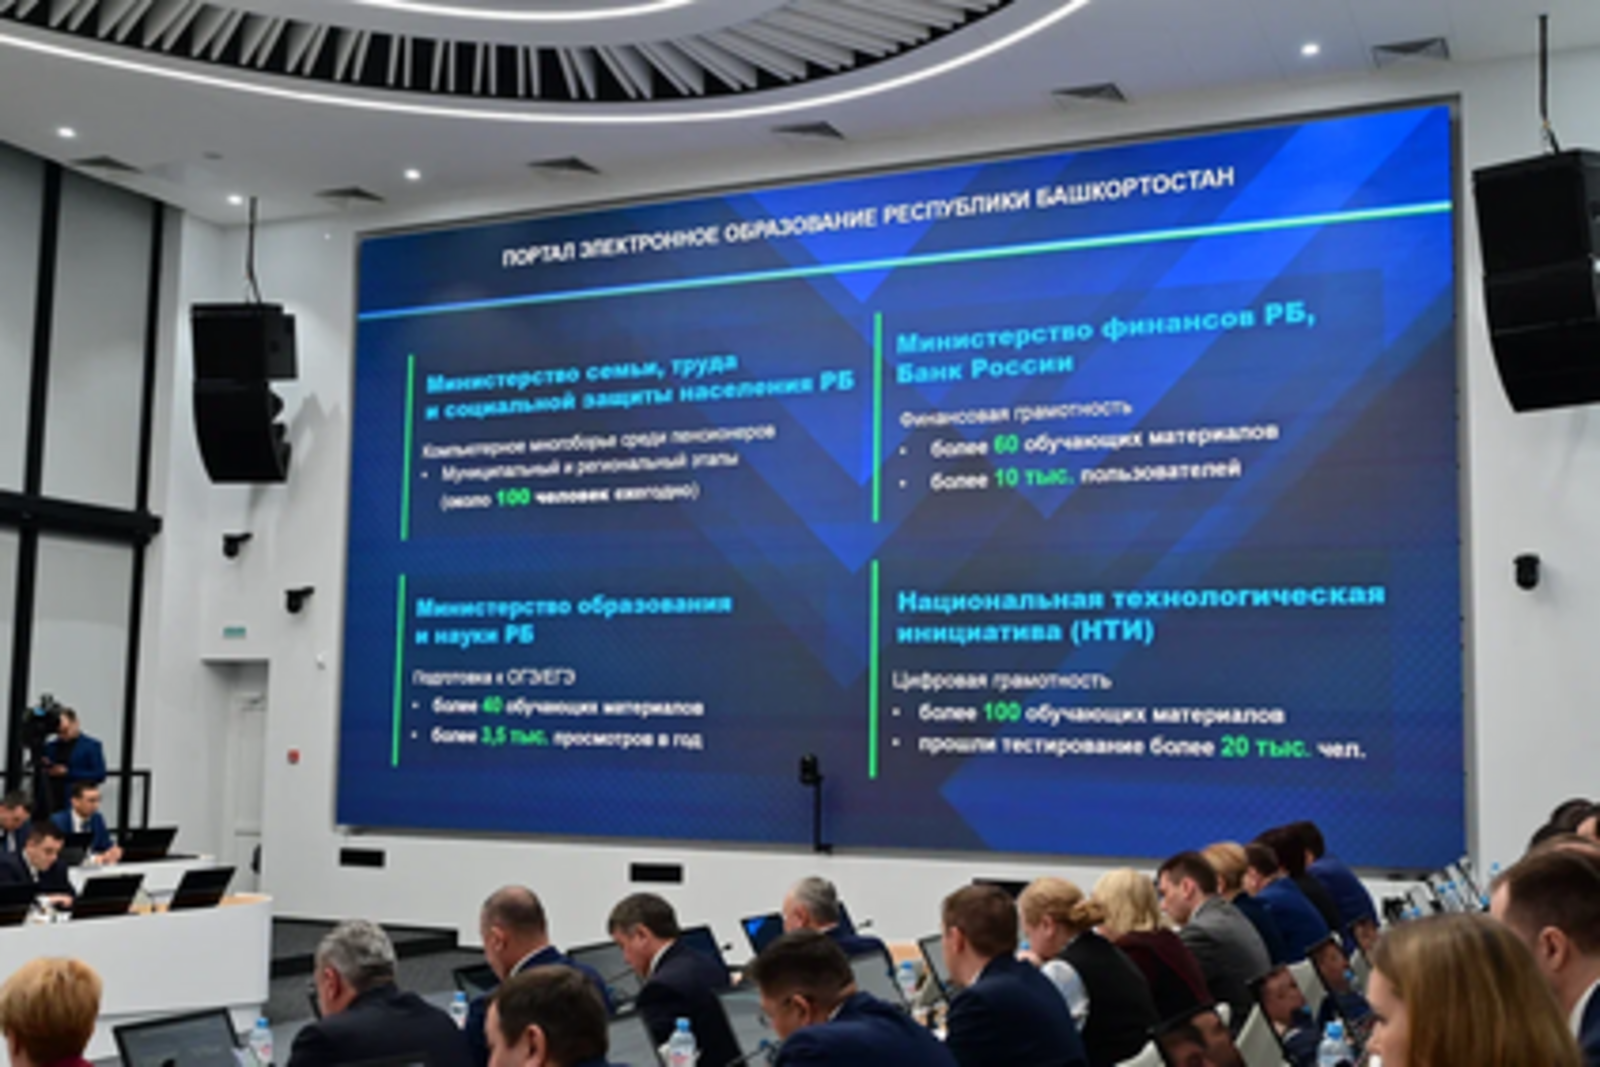 Геннадий Разумикин: В Башкортостане создана современная и технологически развитая инфраструктура электронного образования